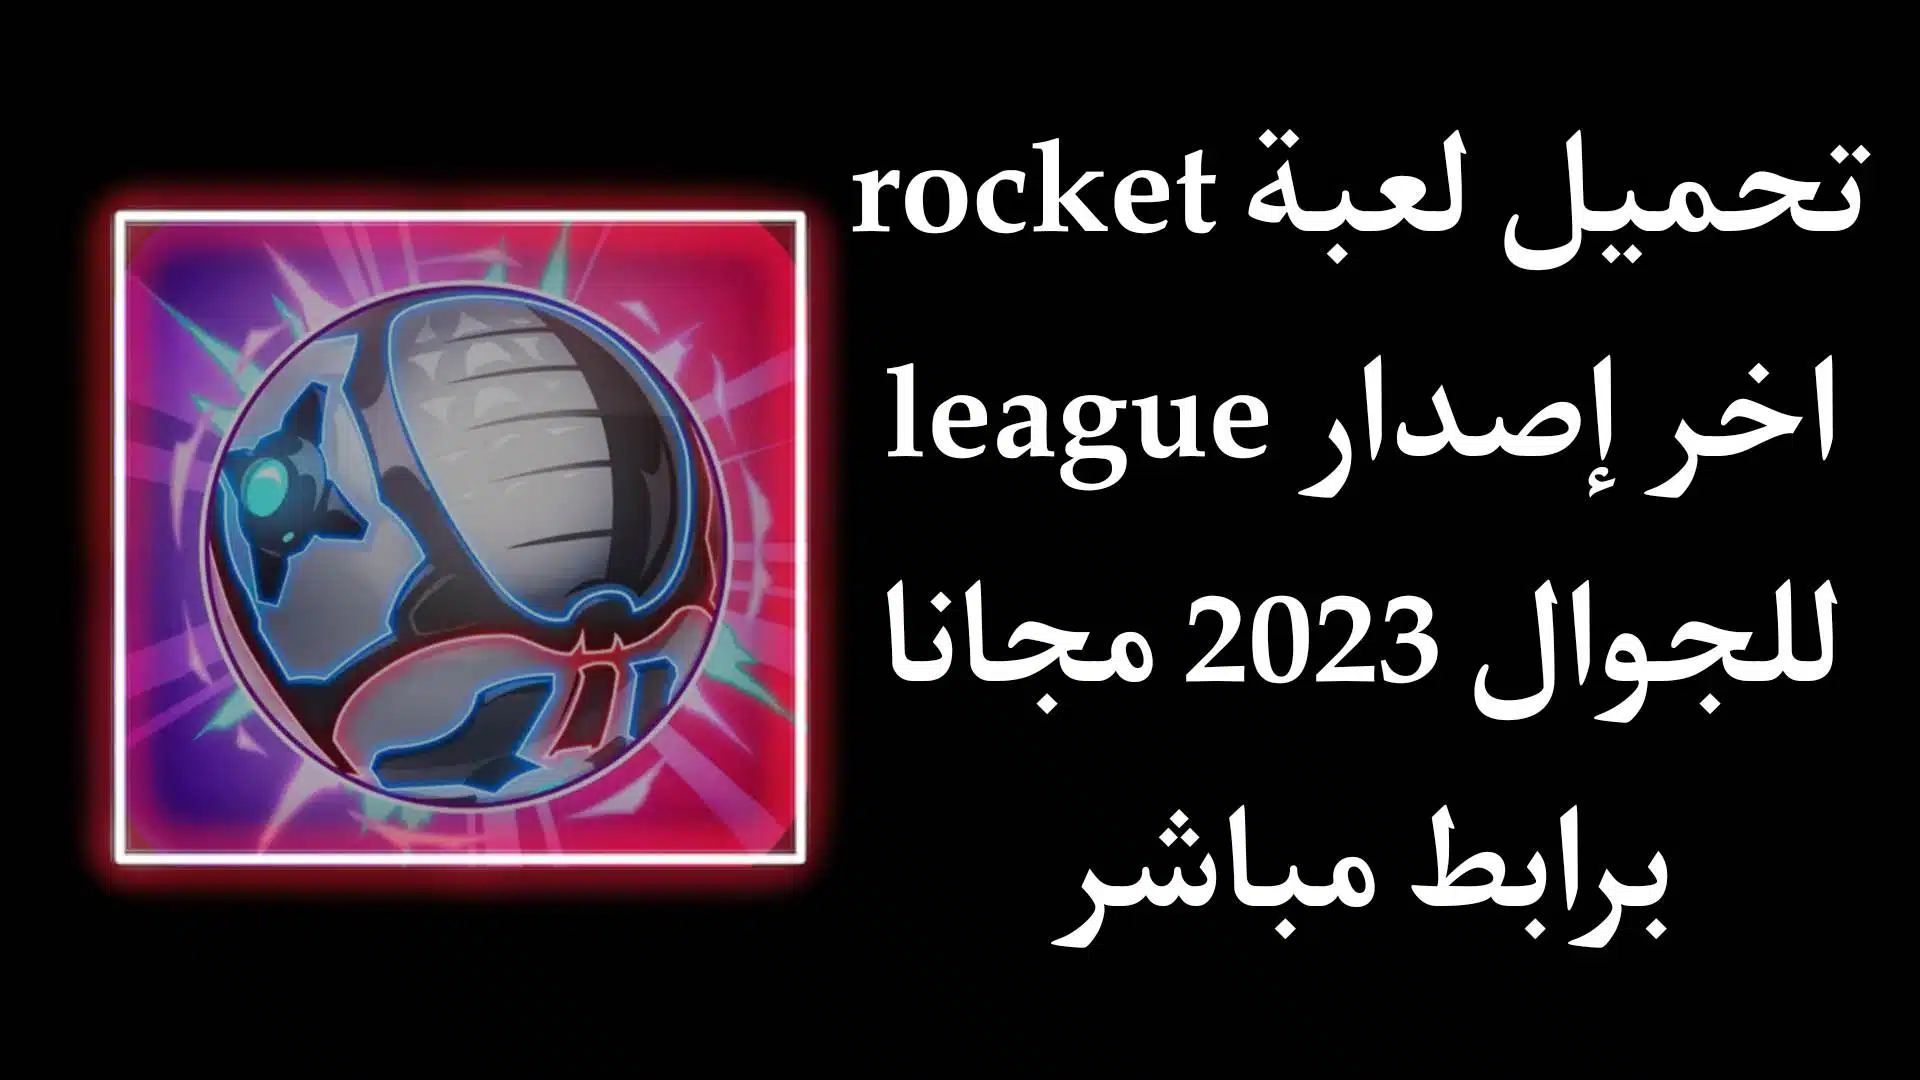 تحميل لعبة rocket league اخر اصدار 2023 للجوال مجانا